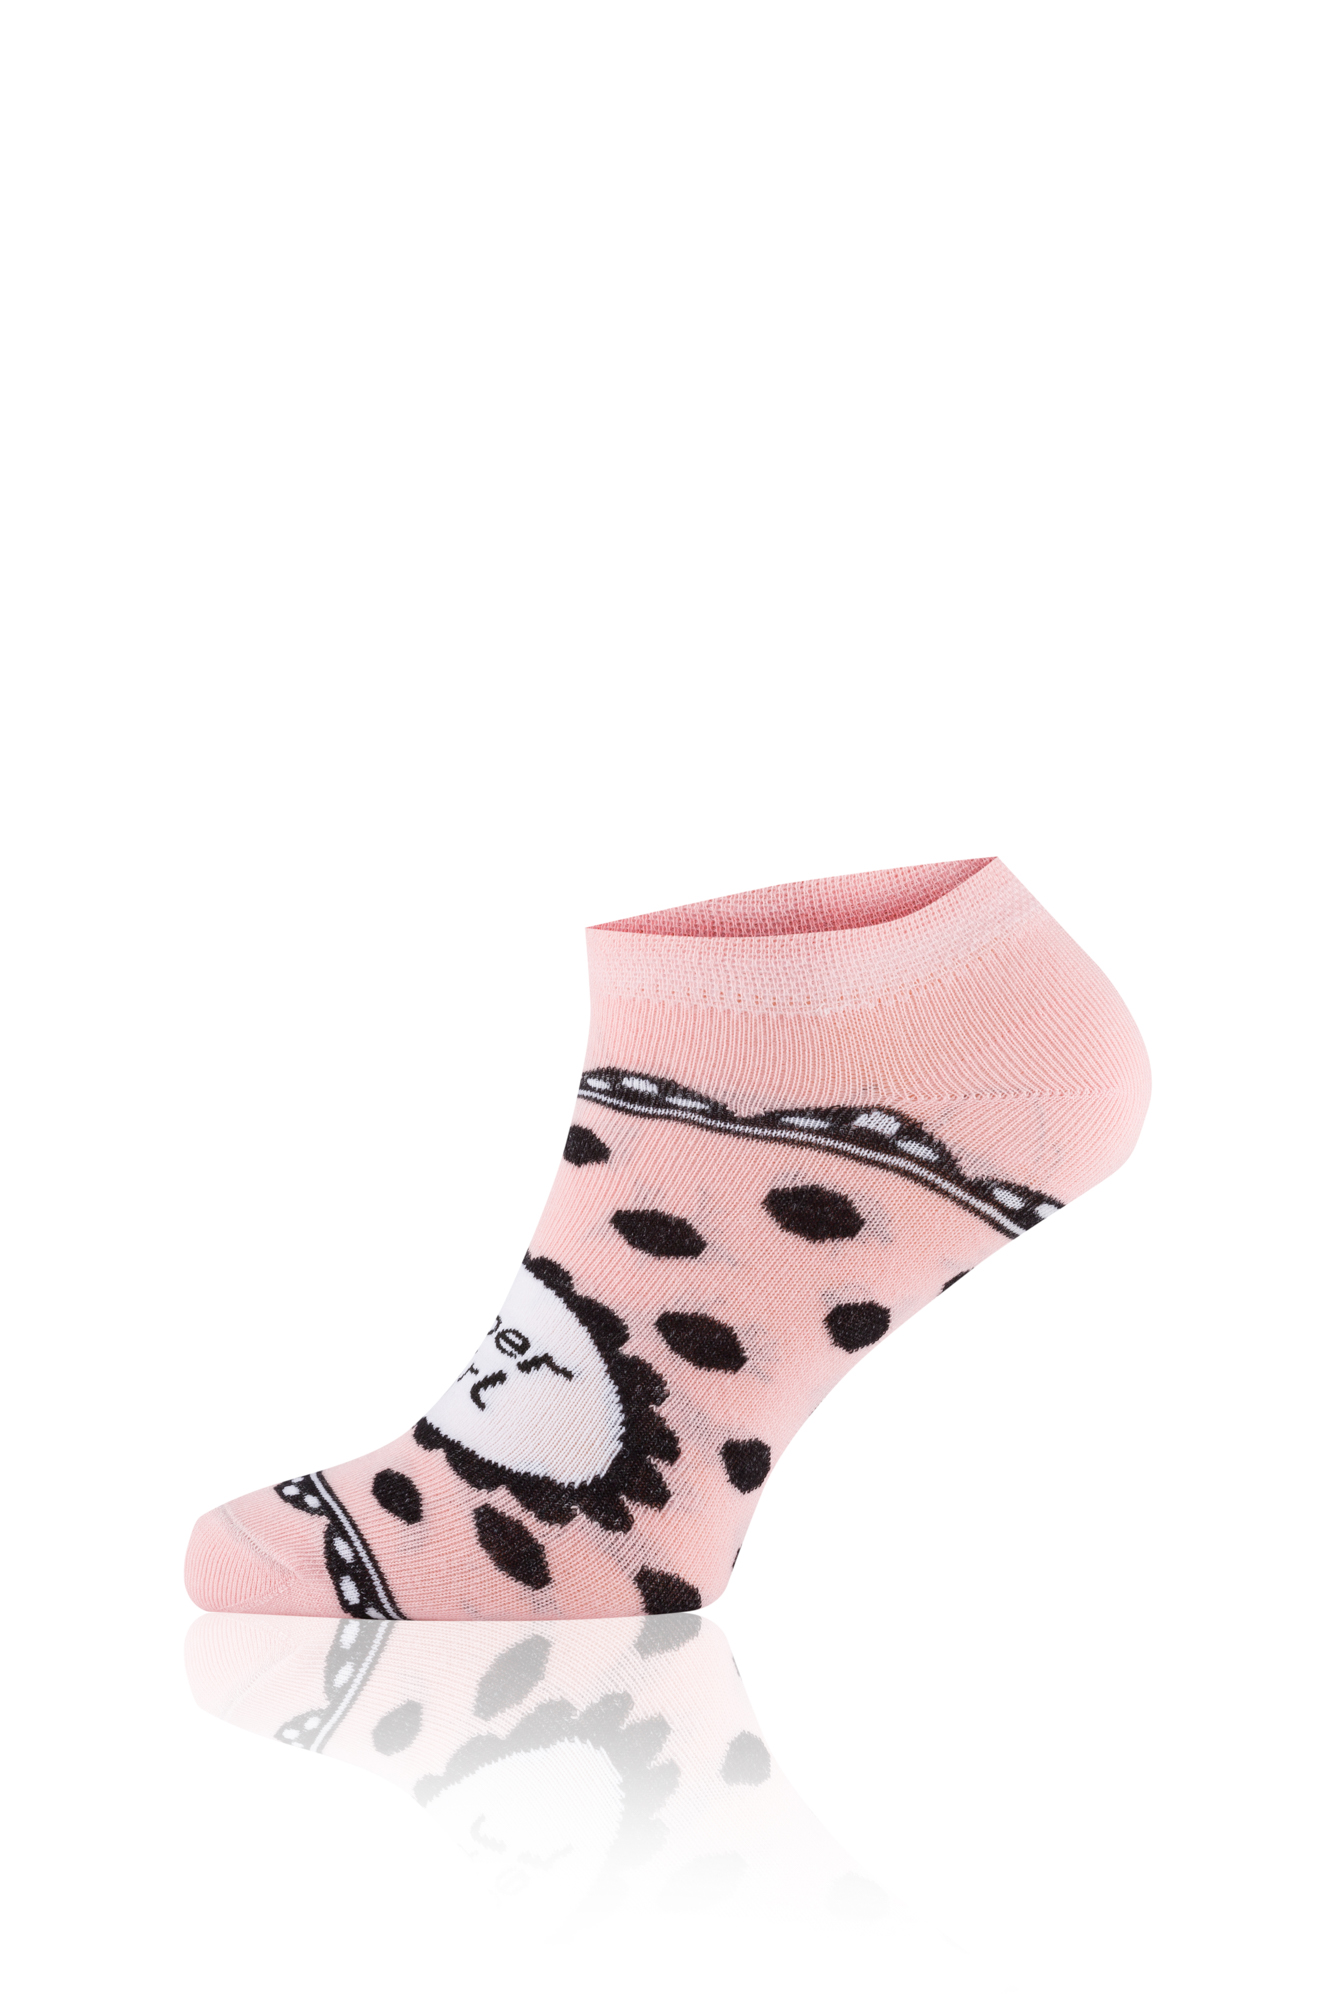 GIRL Socks for Feet - Pink/Black/White